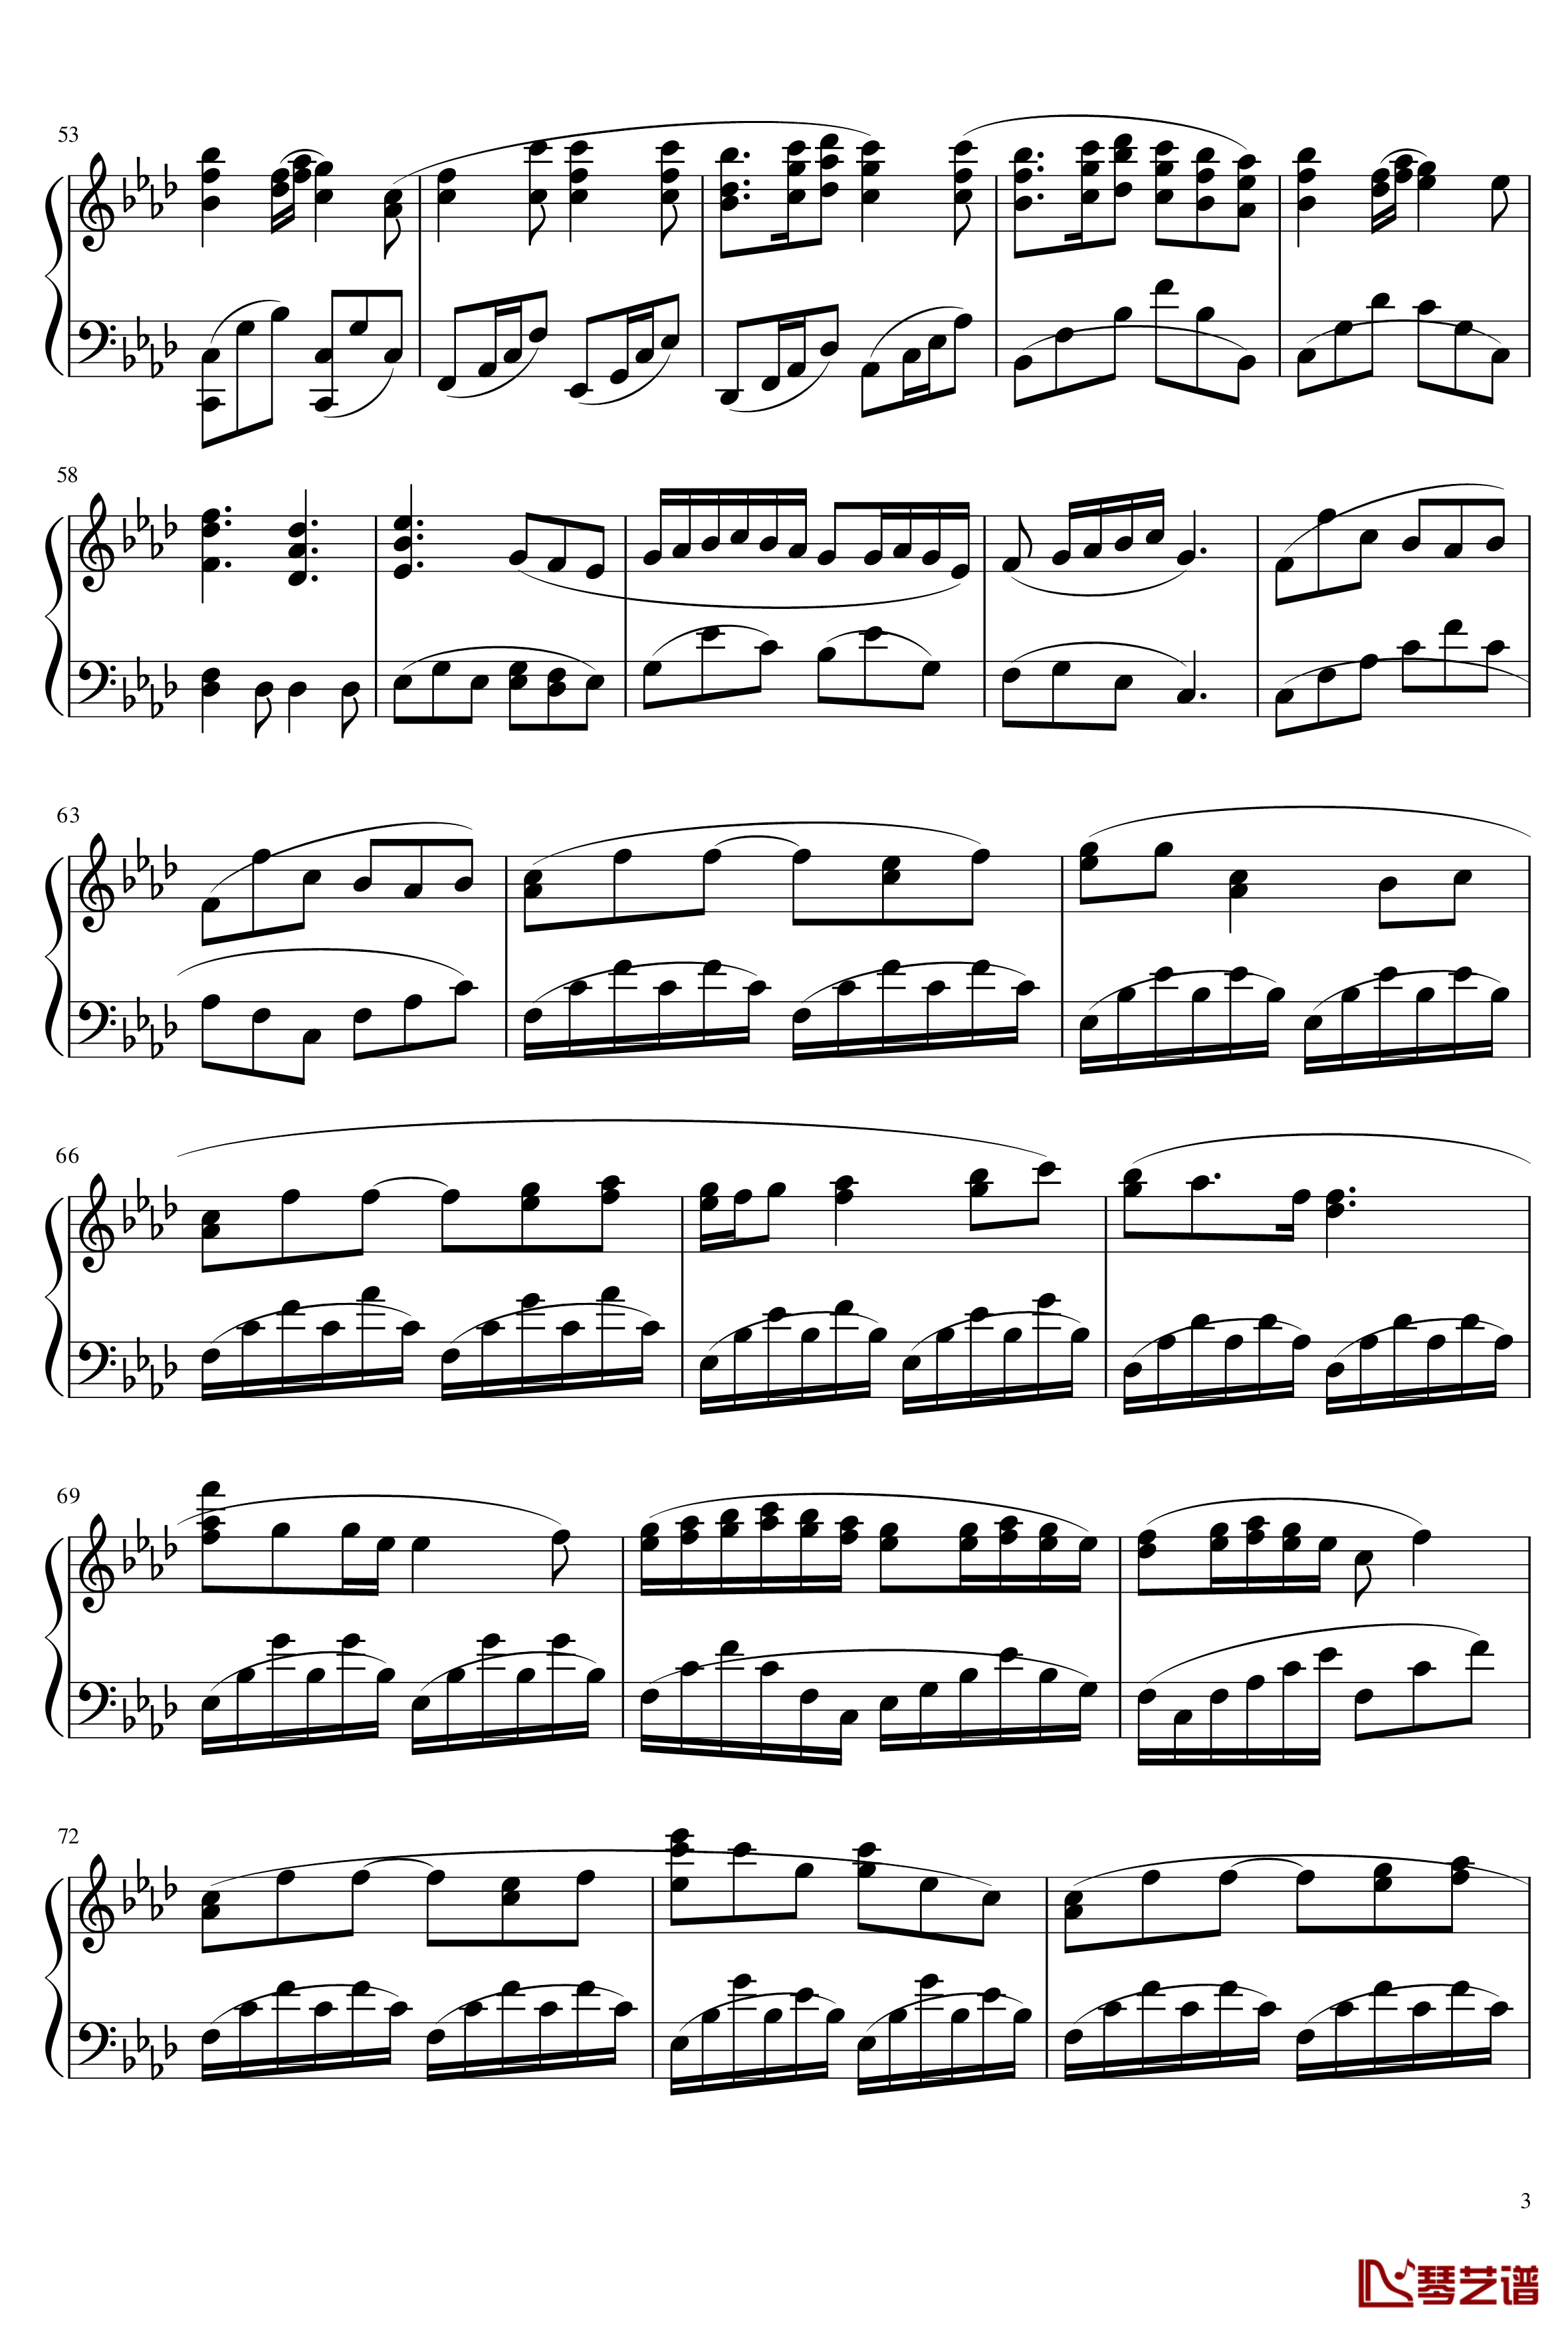 Aria钢琴谱--第四章珈蓝之洞片尾曲-空之境界-尾浦游纪3